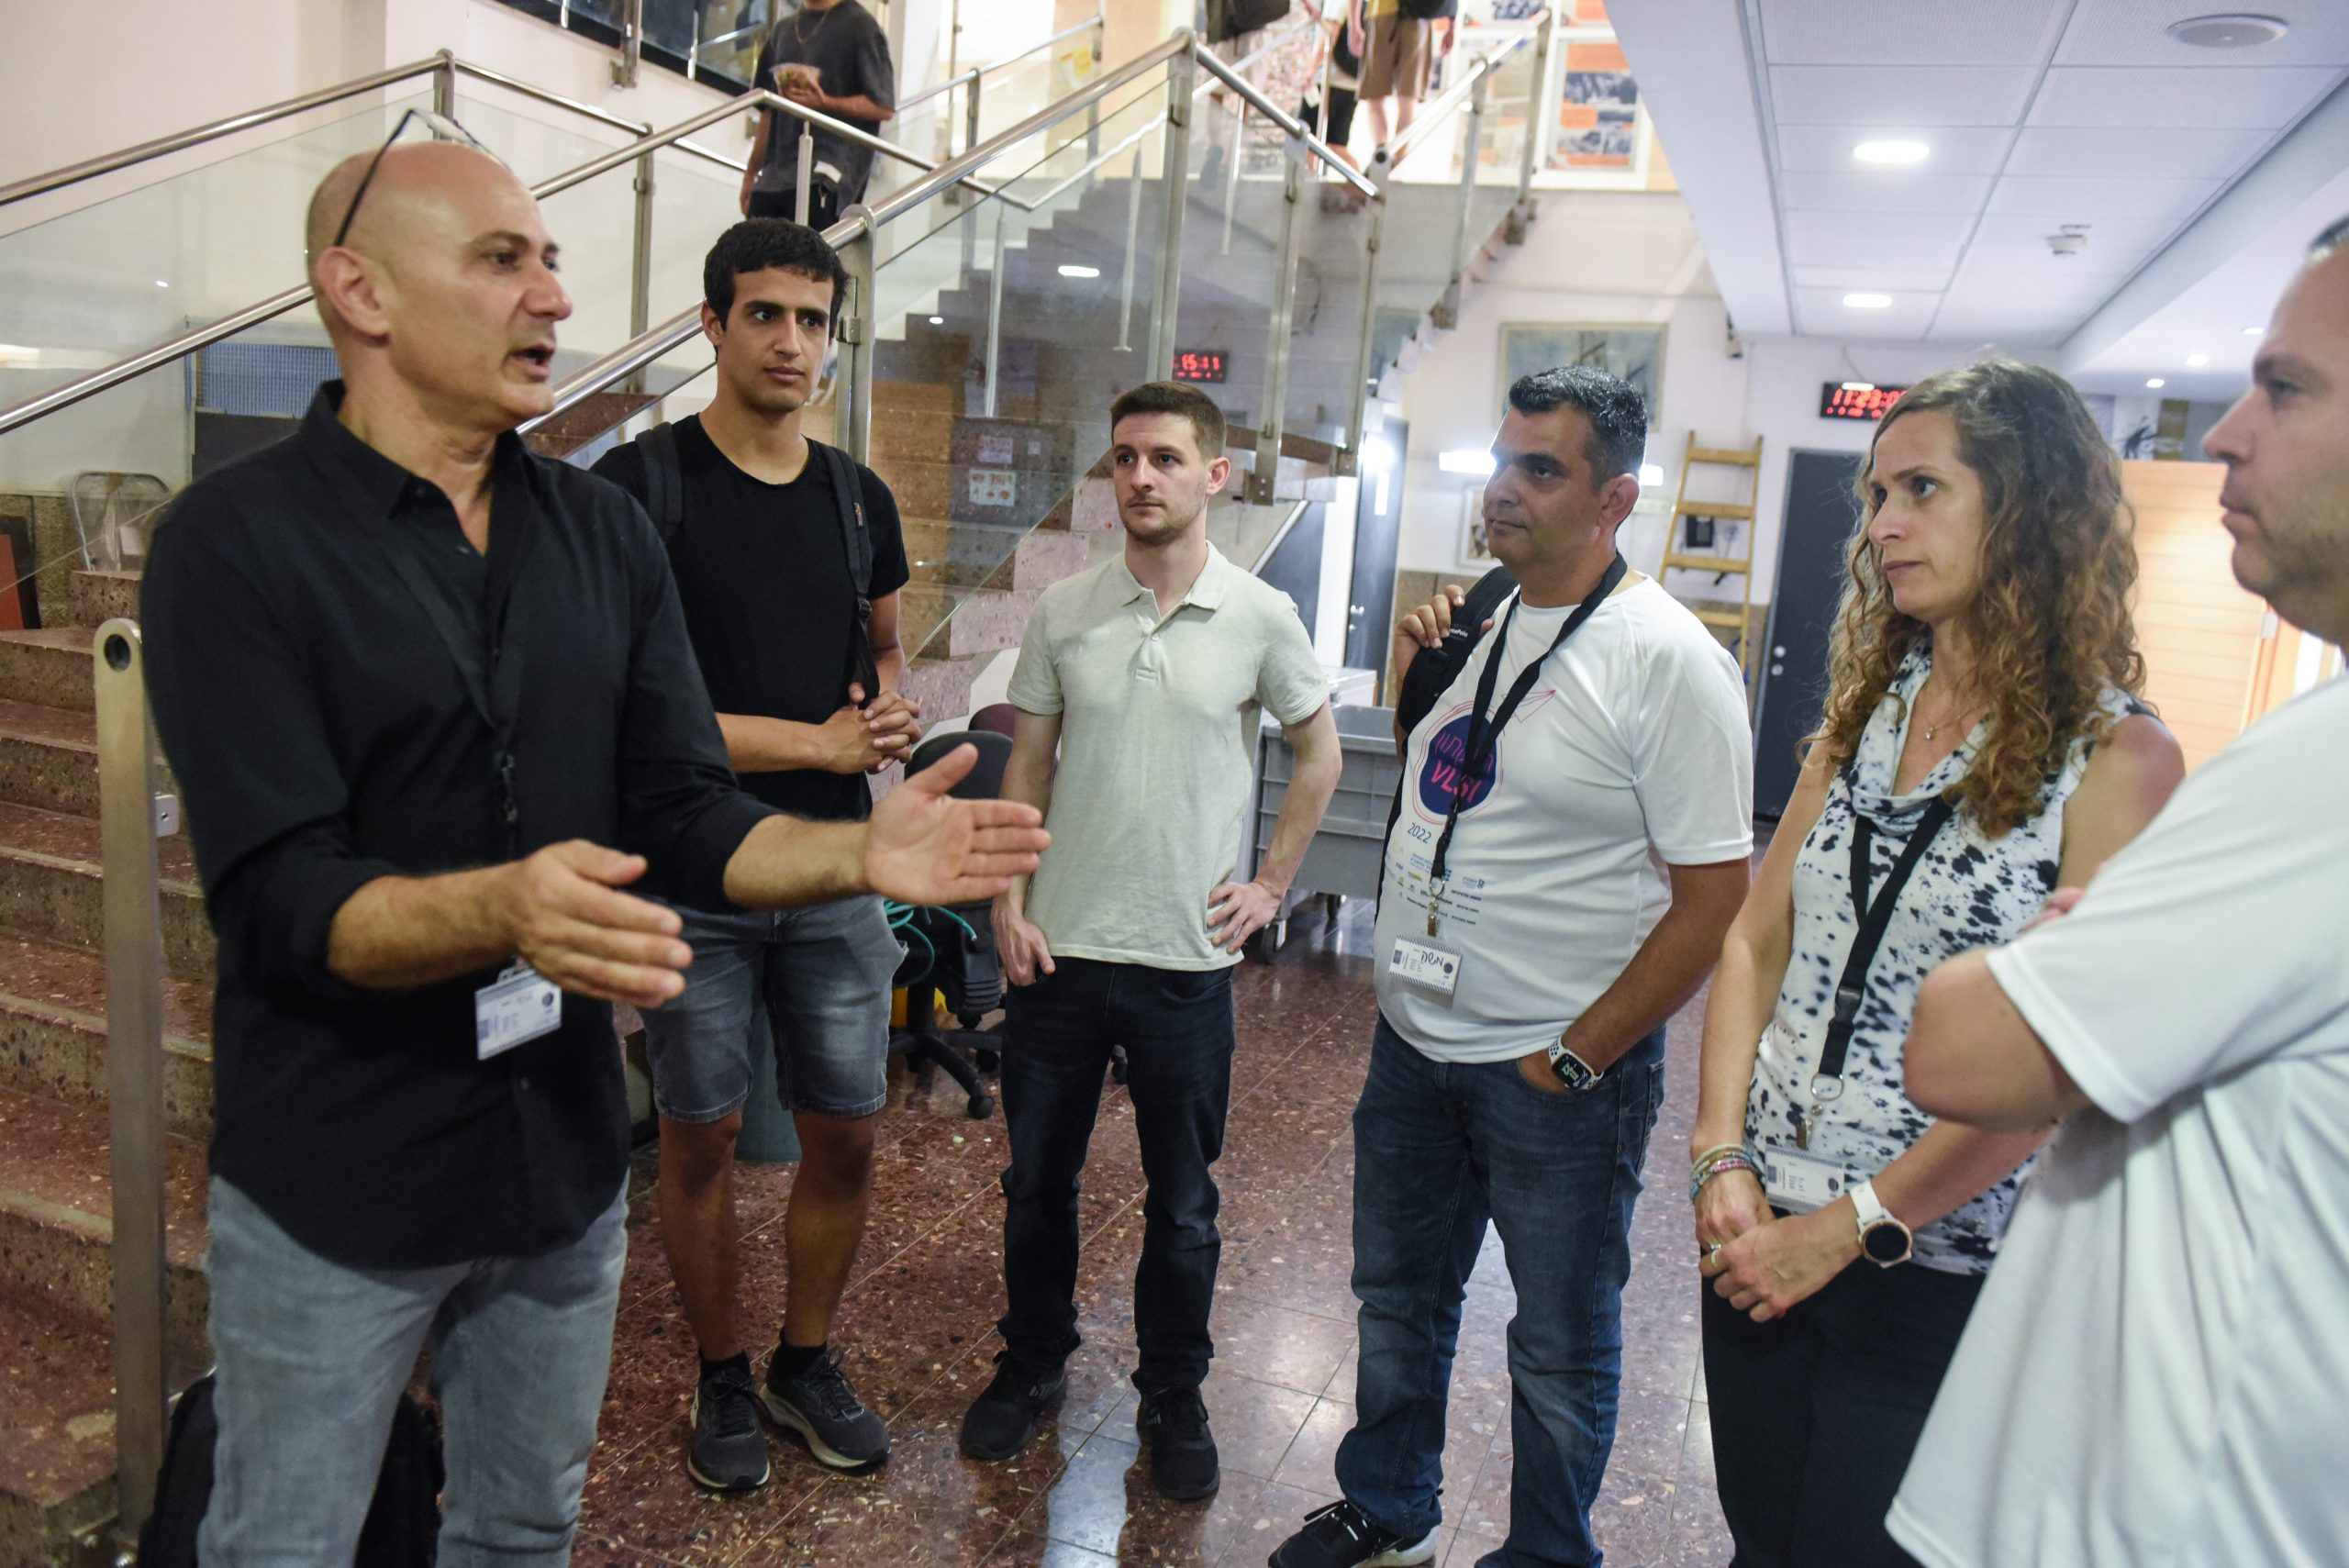 פרופ' פרדי גבאי מתדרך את המנטורים, מהנדסים מובילים מתעשיית ההייטק הישראלית. קרדיט צילום: רמי שלוש, דוברות הטכניון